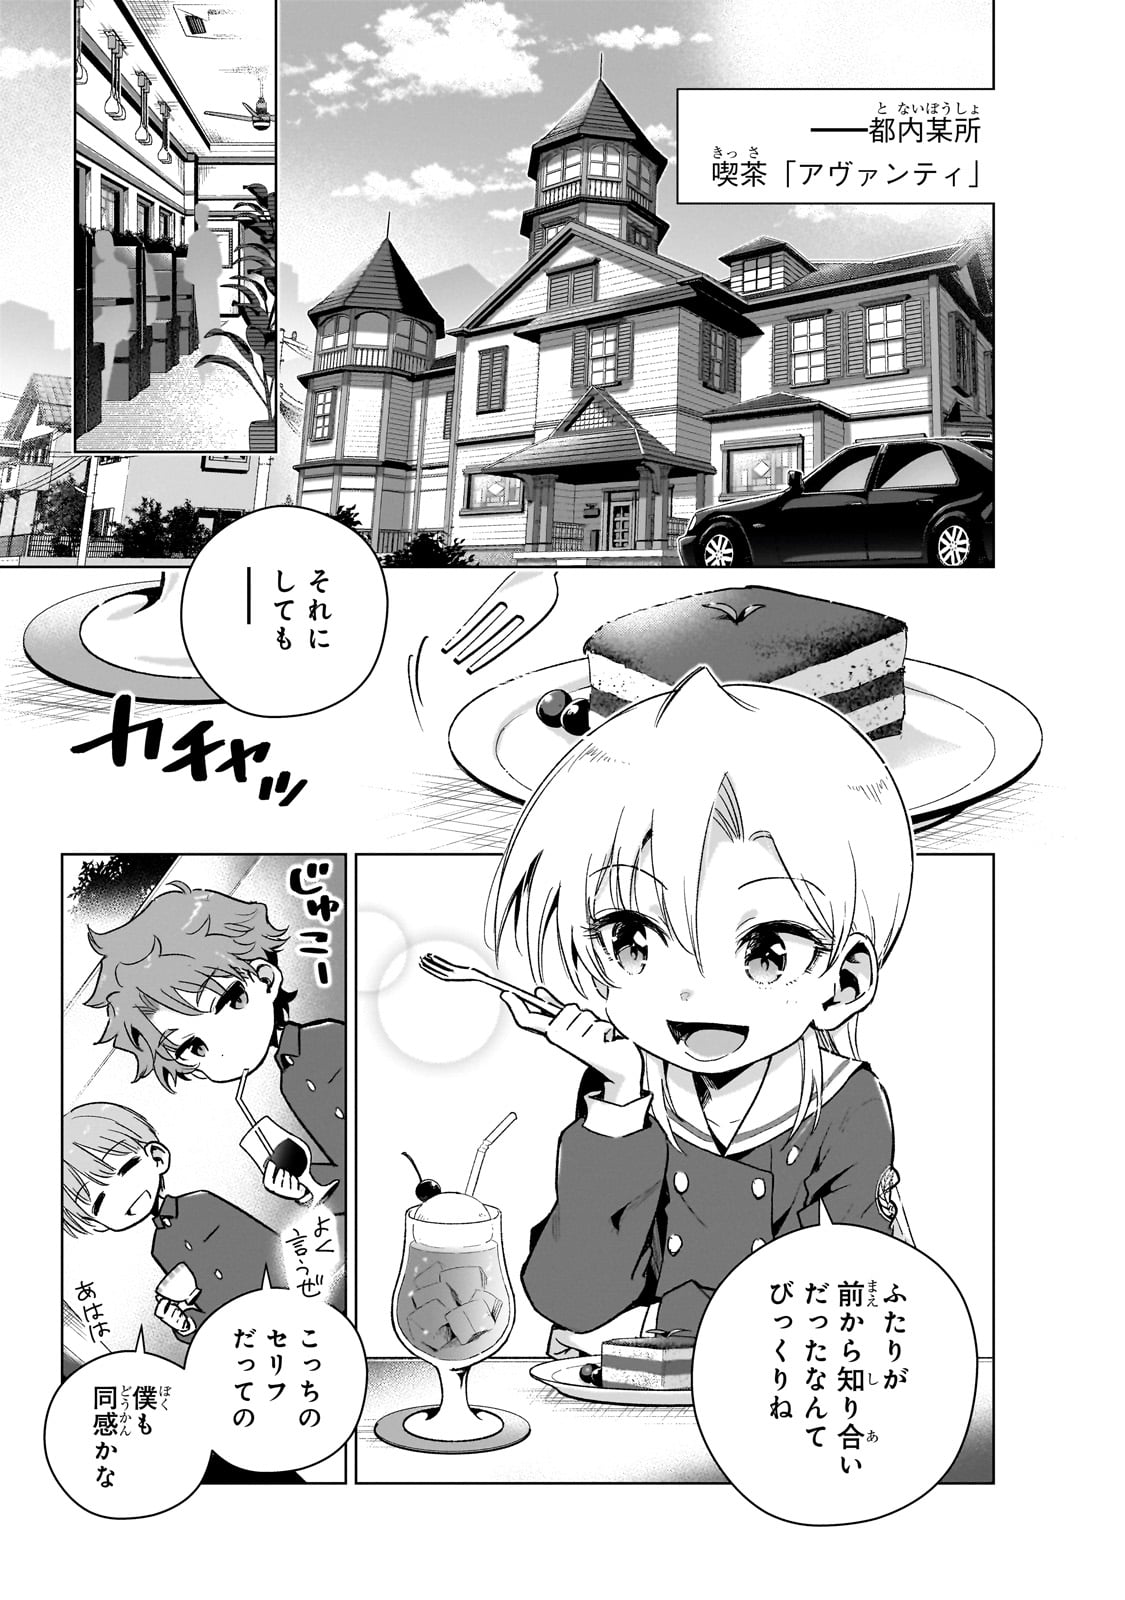 Gendai Shakai de Otome Game no Akuyaku Reijou wo suru no wa Chotto Taihen - Chapter 14 - Page 3